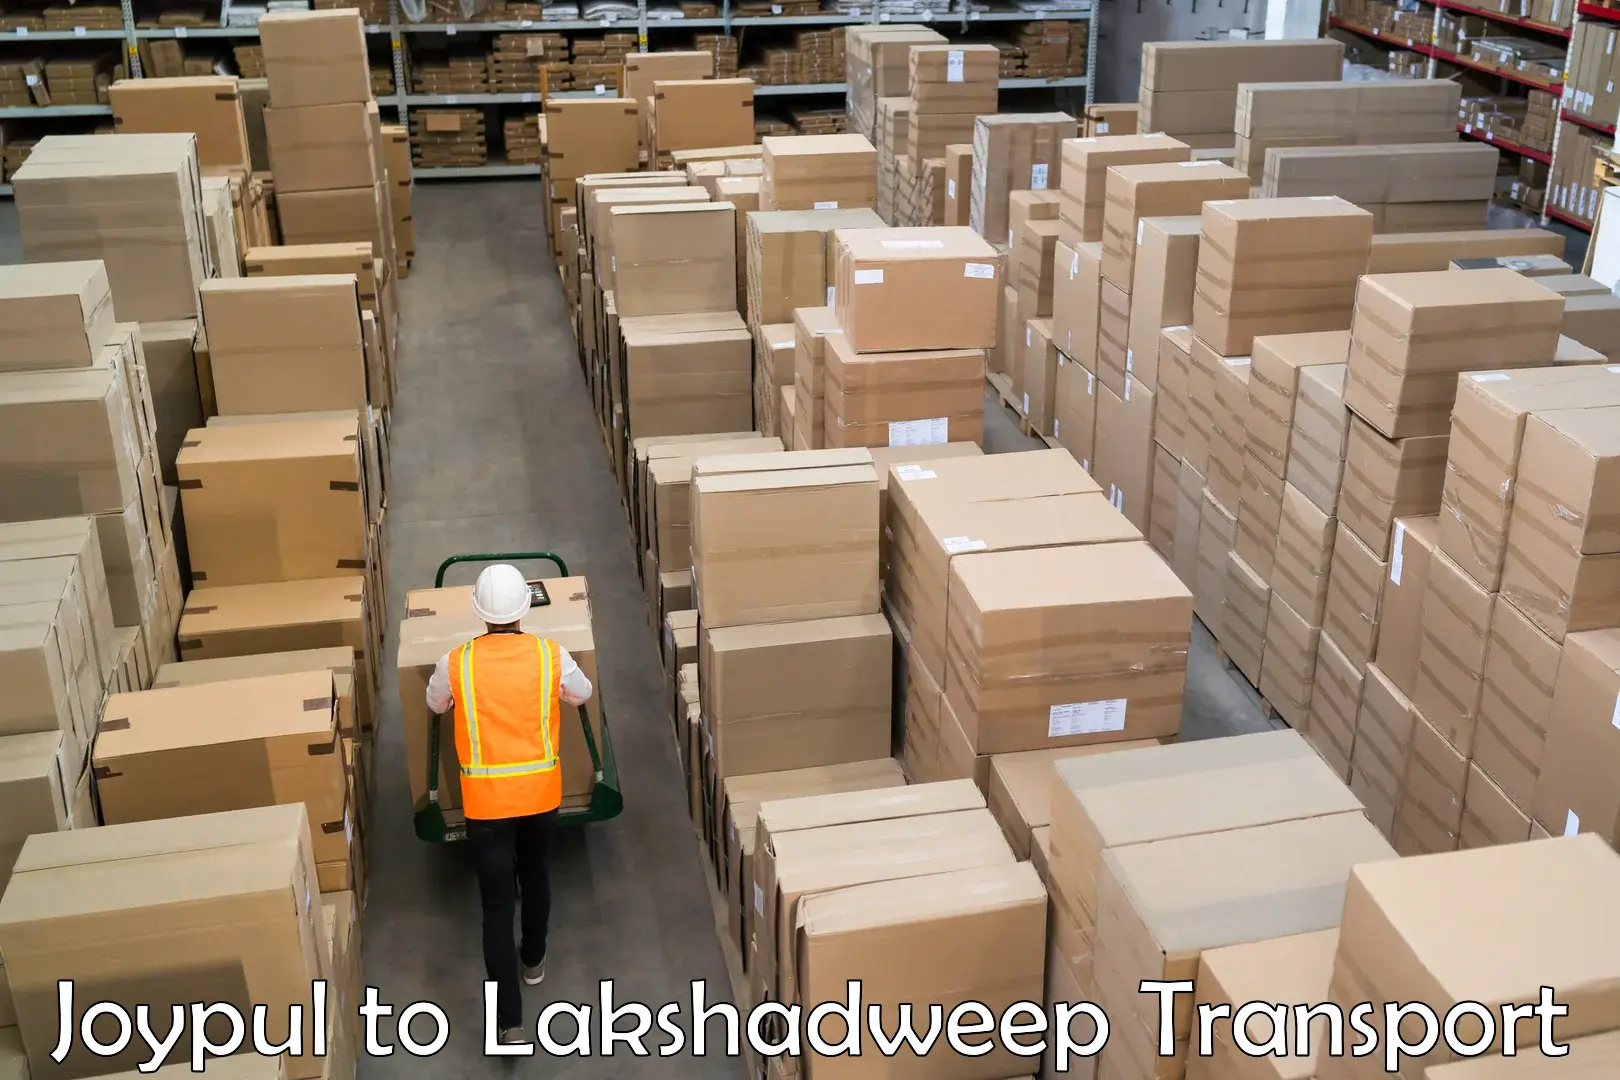 Transport in sharing Joypul to Lakshadweep